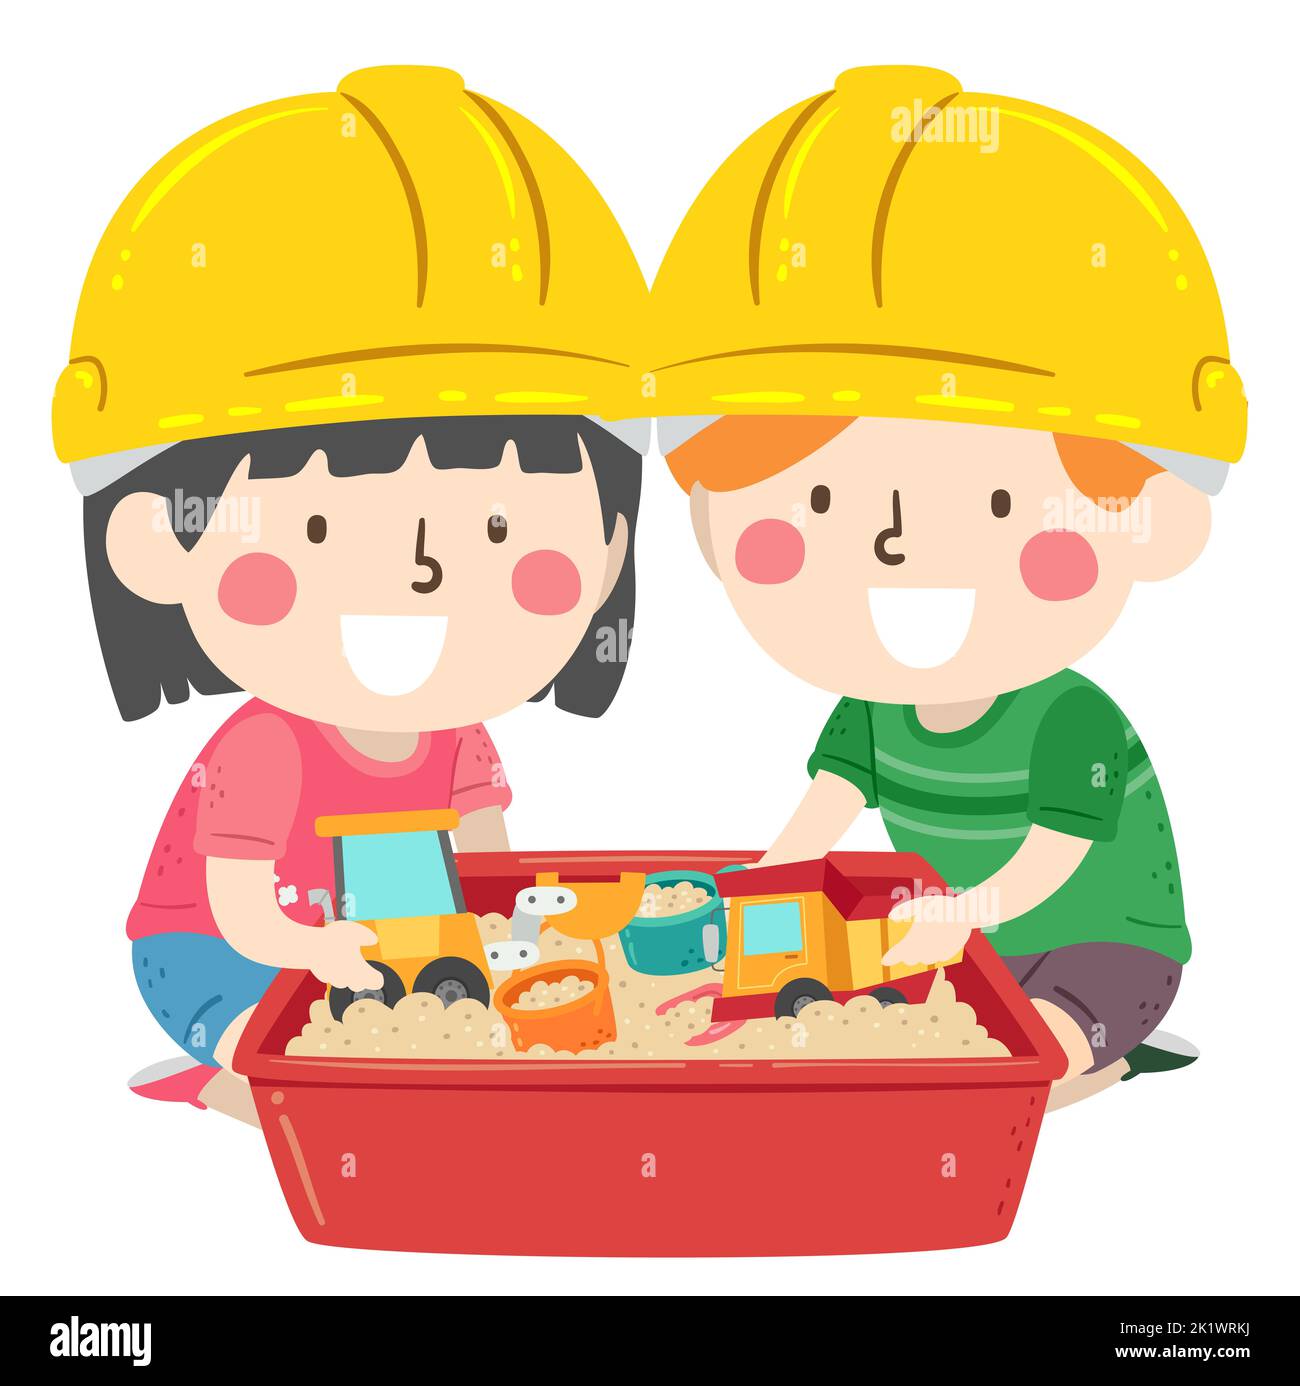 Illustrazione dei bambini che indossano il cappello duro giallo e che giocano con i giocattoli di costruzione nel Sandbox Foto Stock